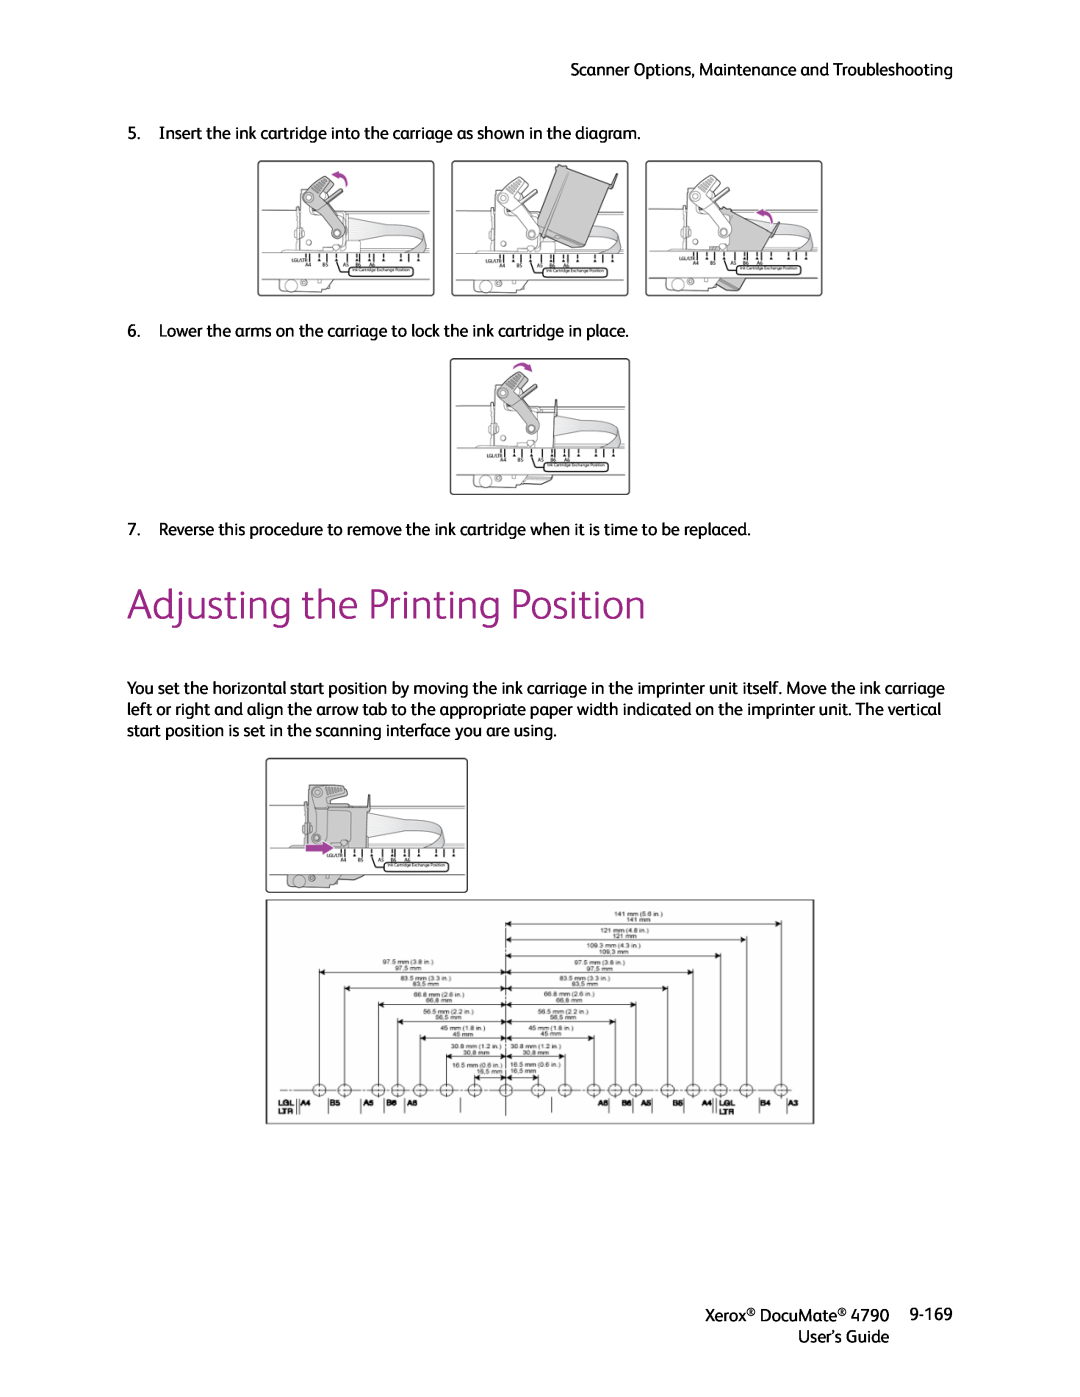 Xerox xerox documate manual Adjusting the Printing Position 